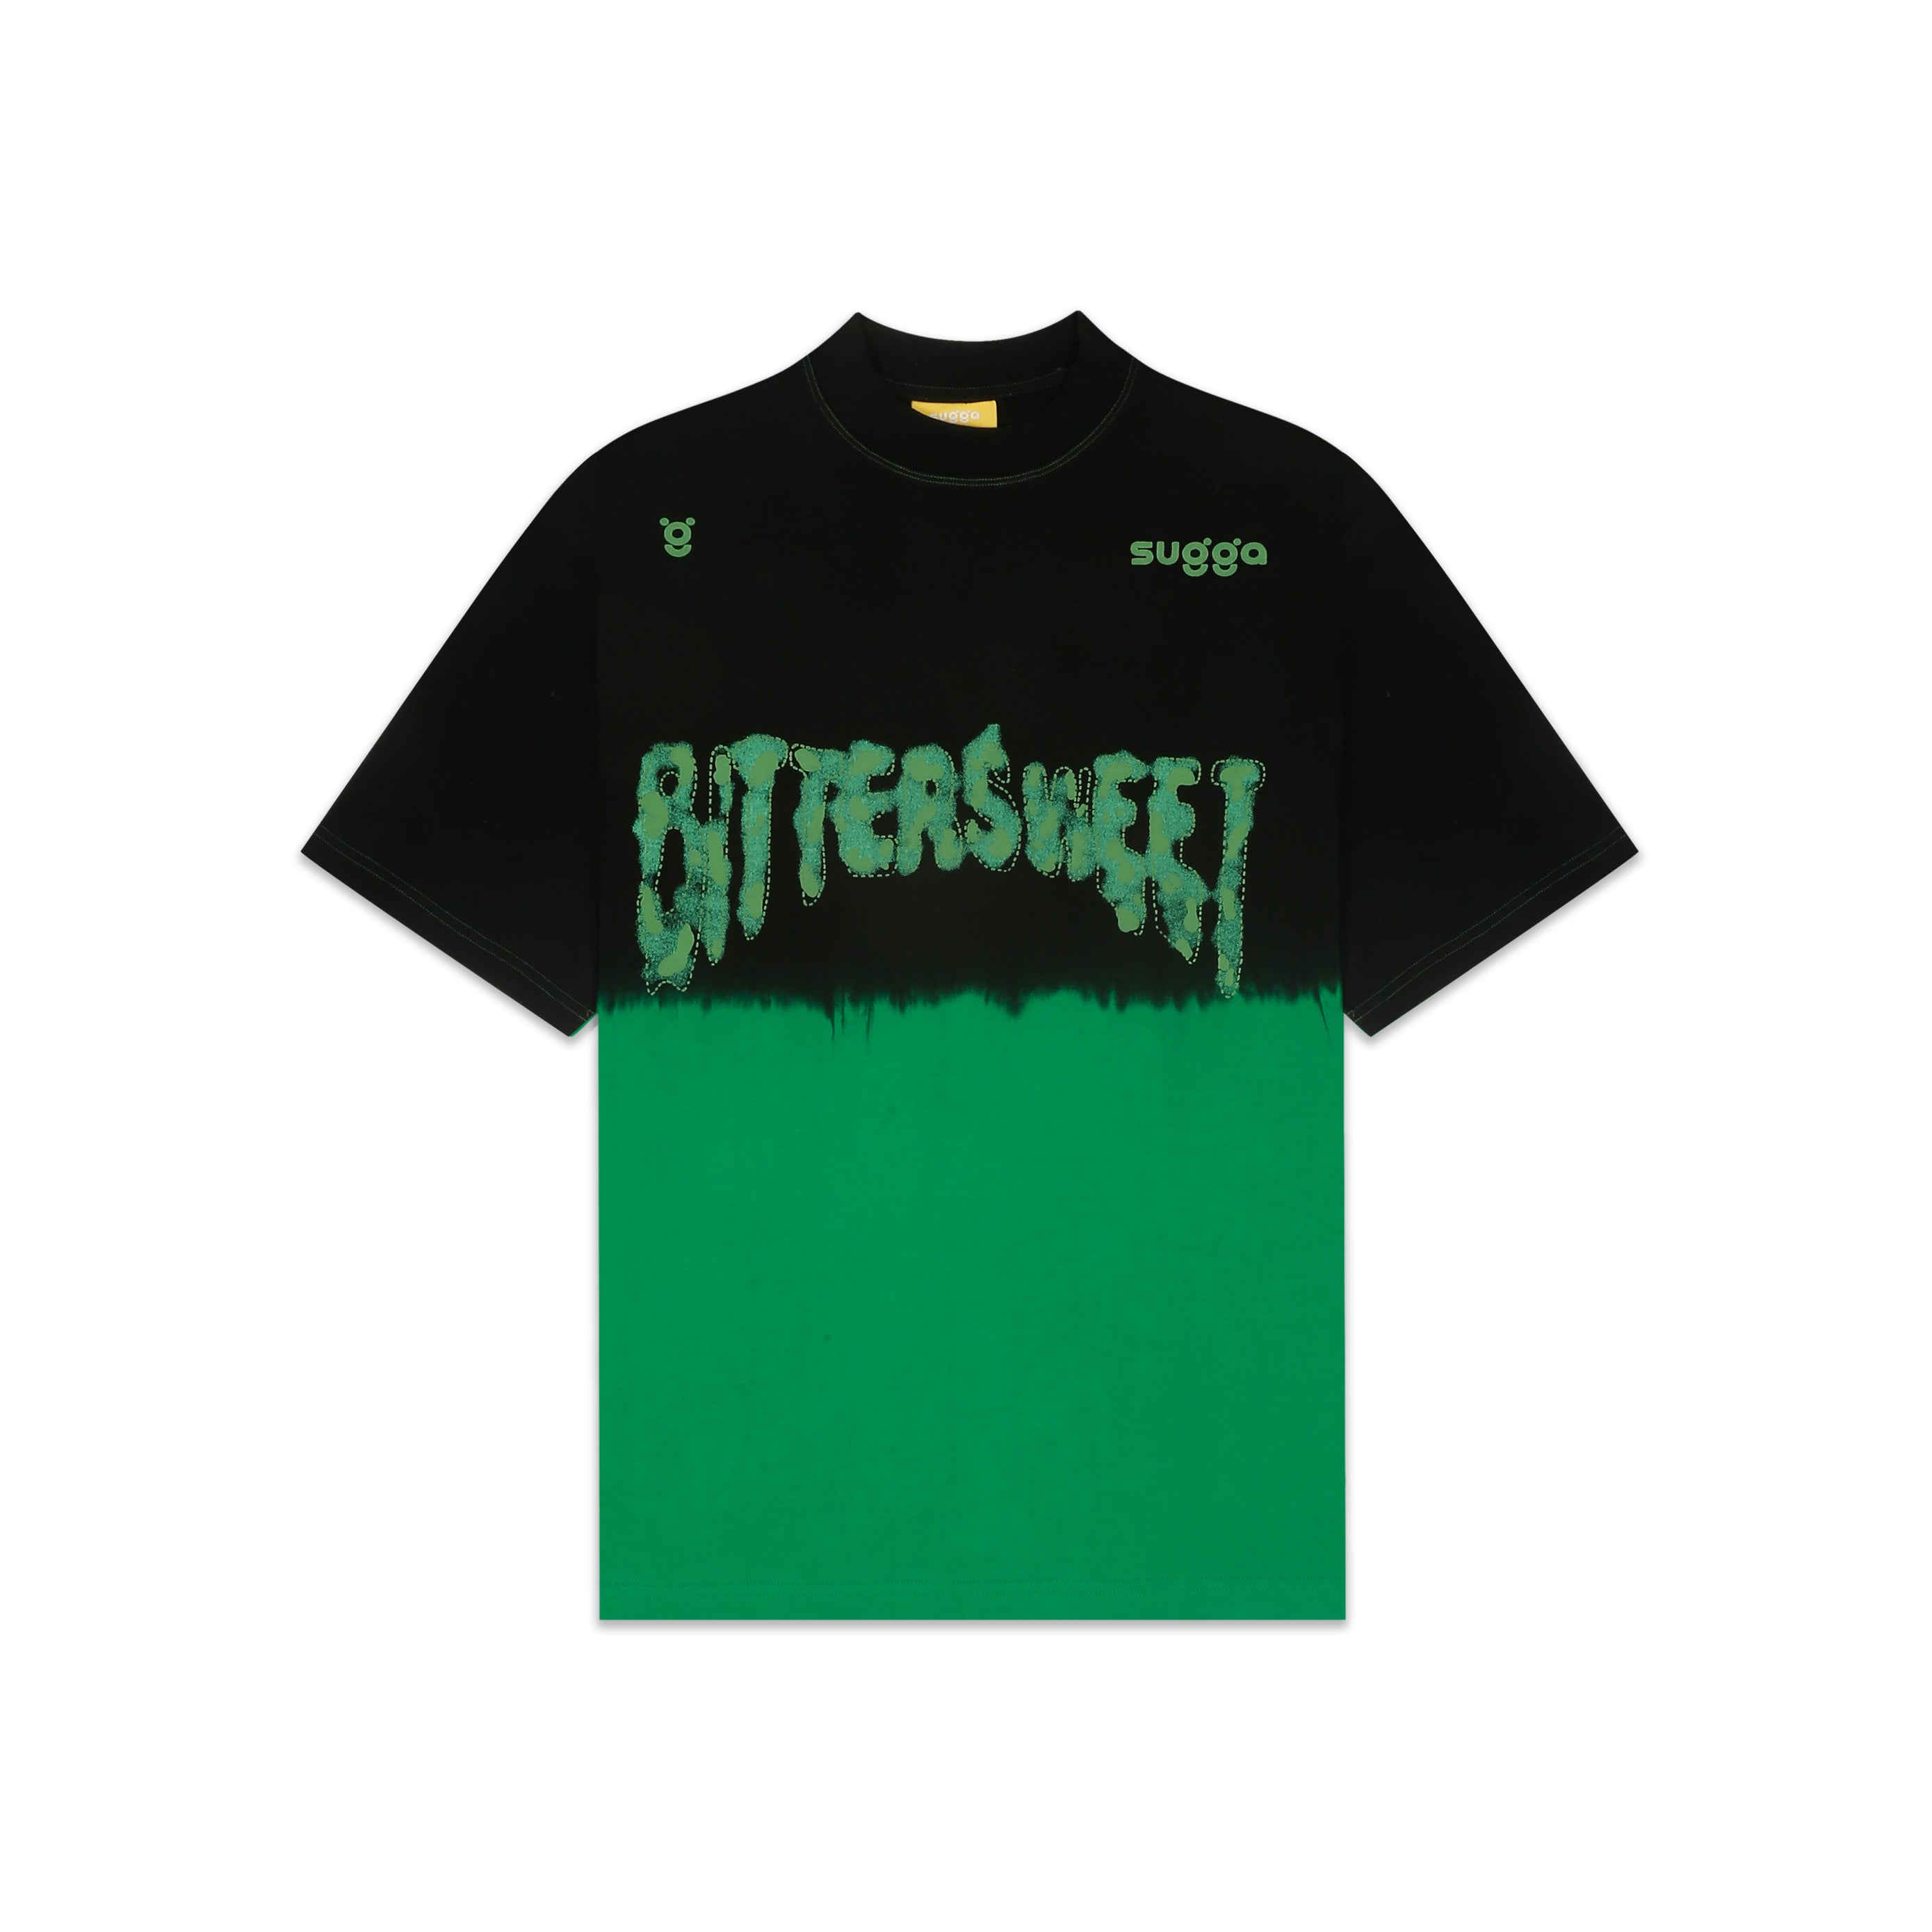 Bittersweet - Green